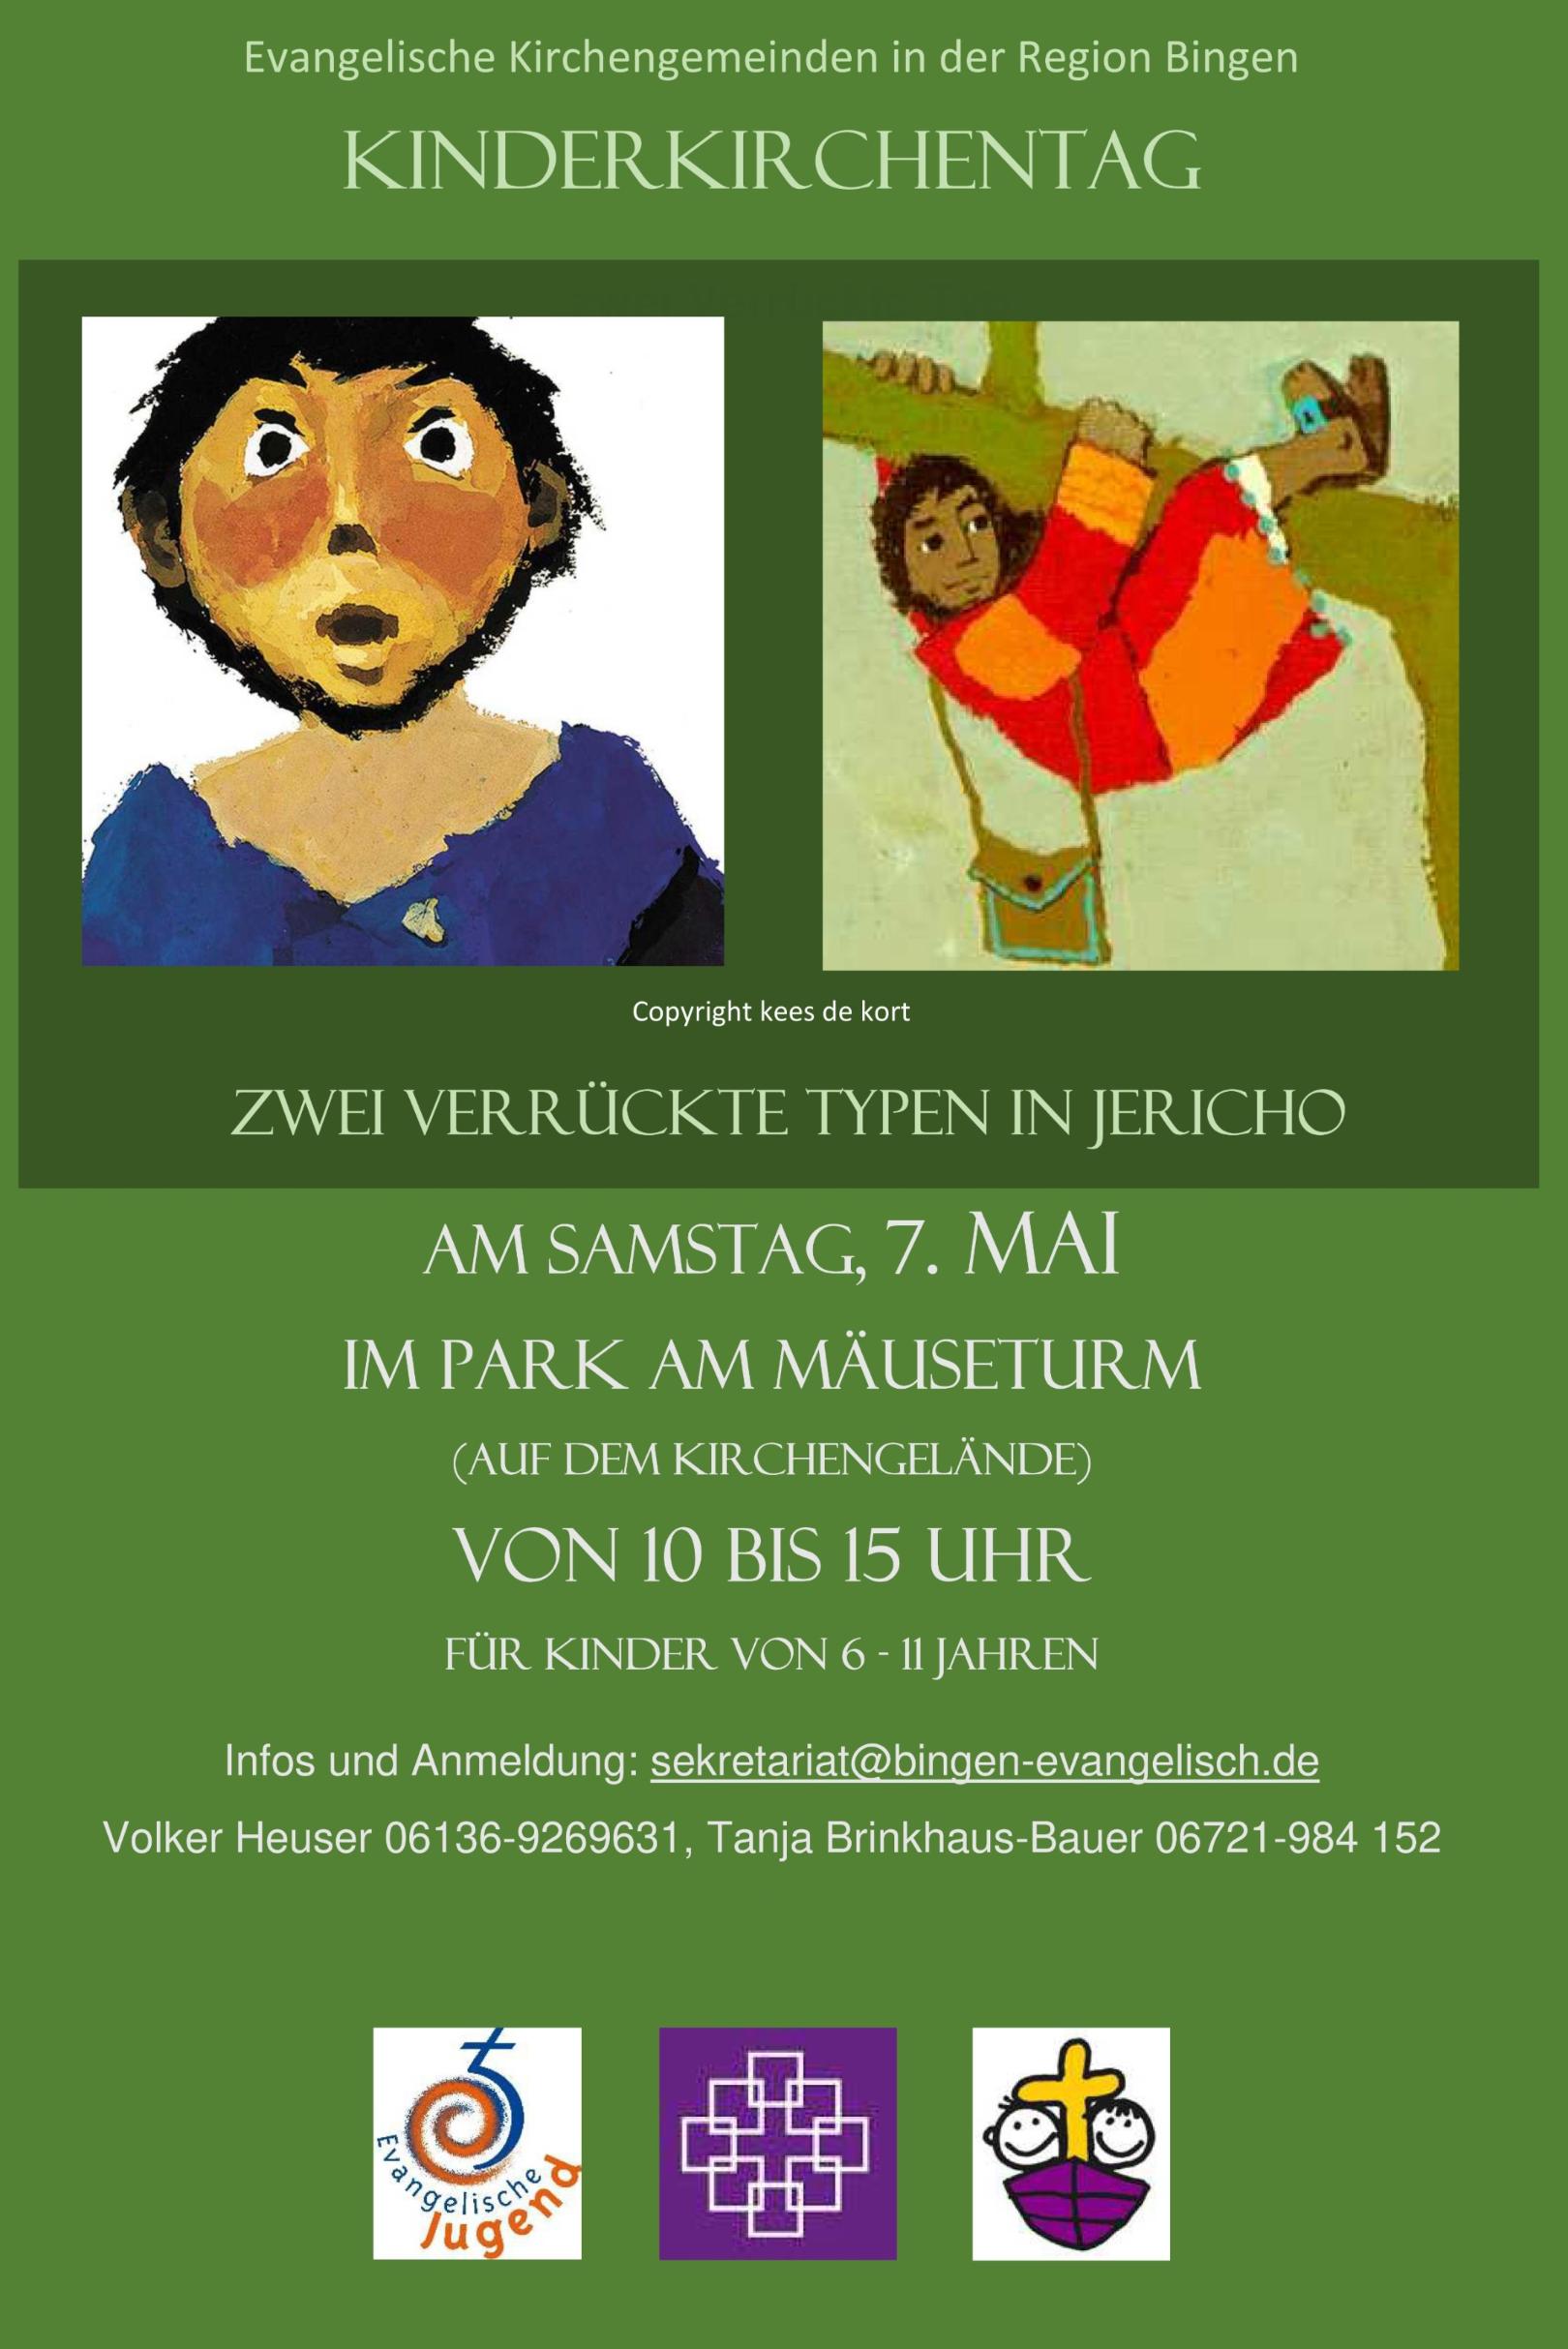 Plakat Kinderkirchentag (c) Evangelische Kirchengemeinden in der Region Bingen